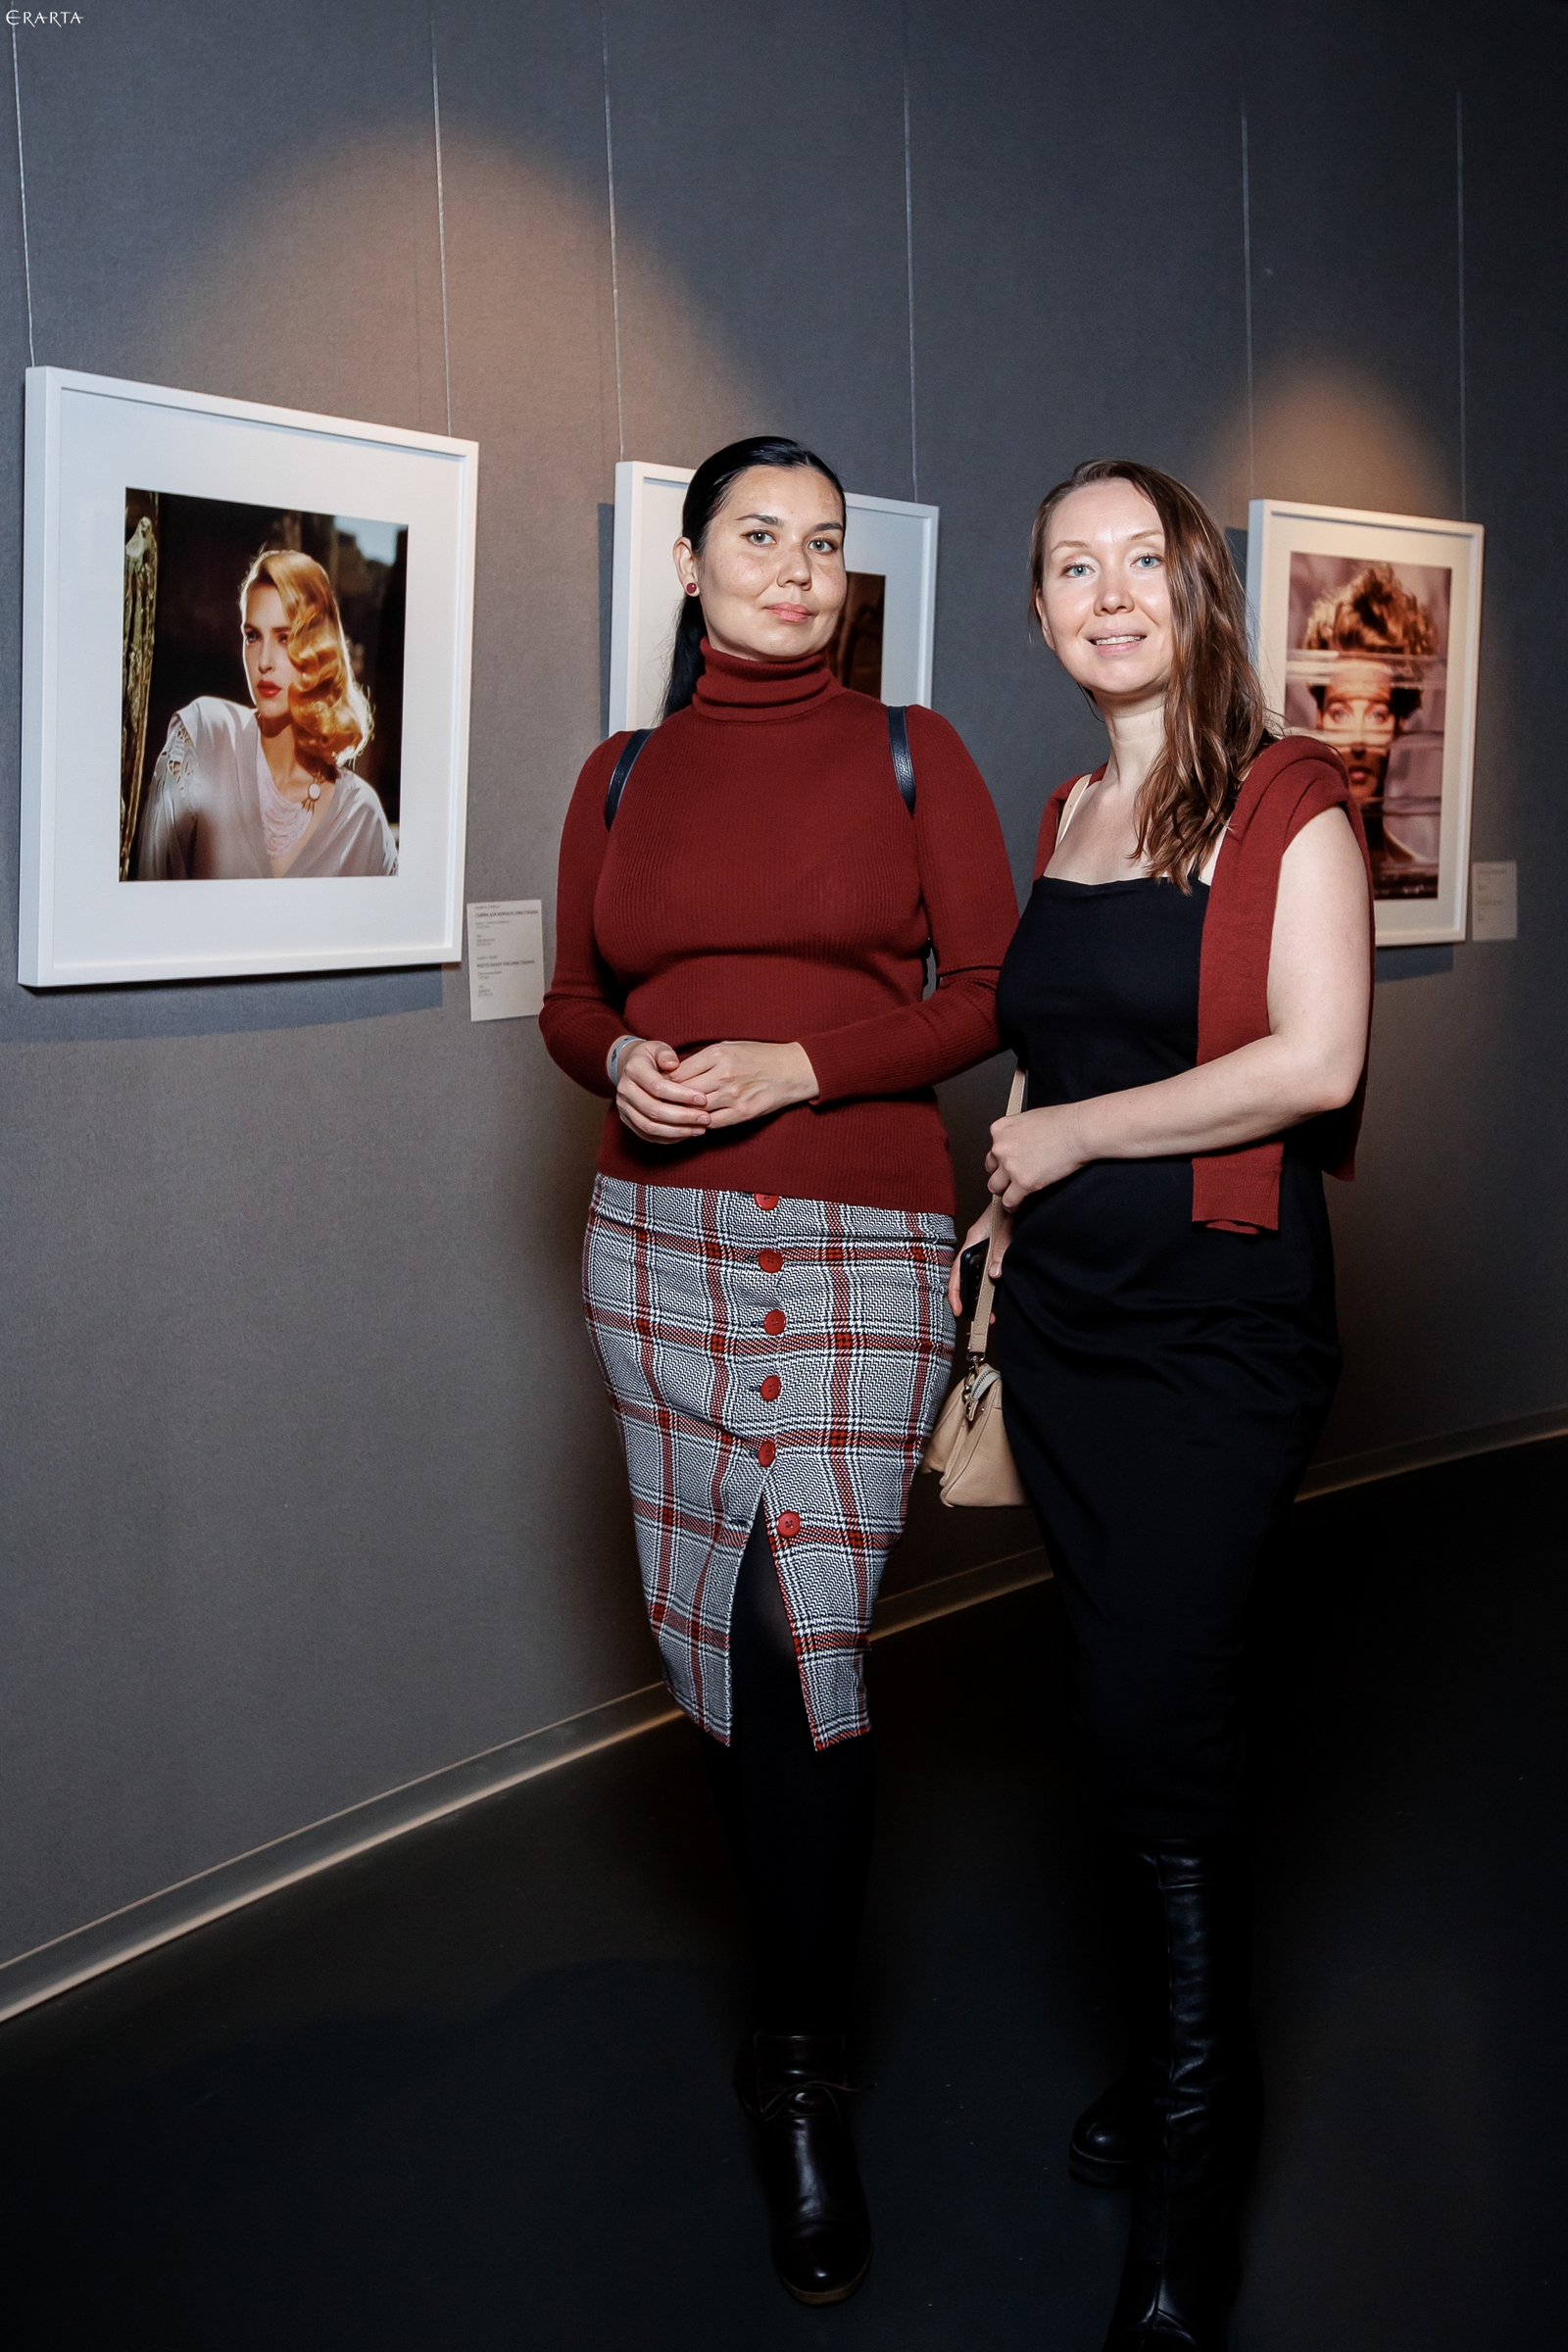 Photo Report: Private View of Alberta Tiburzi’s Exhibition